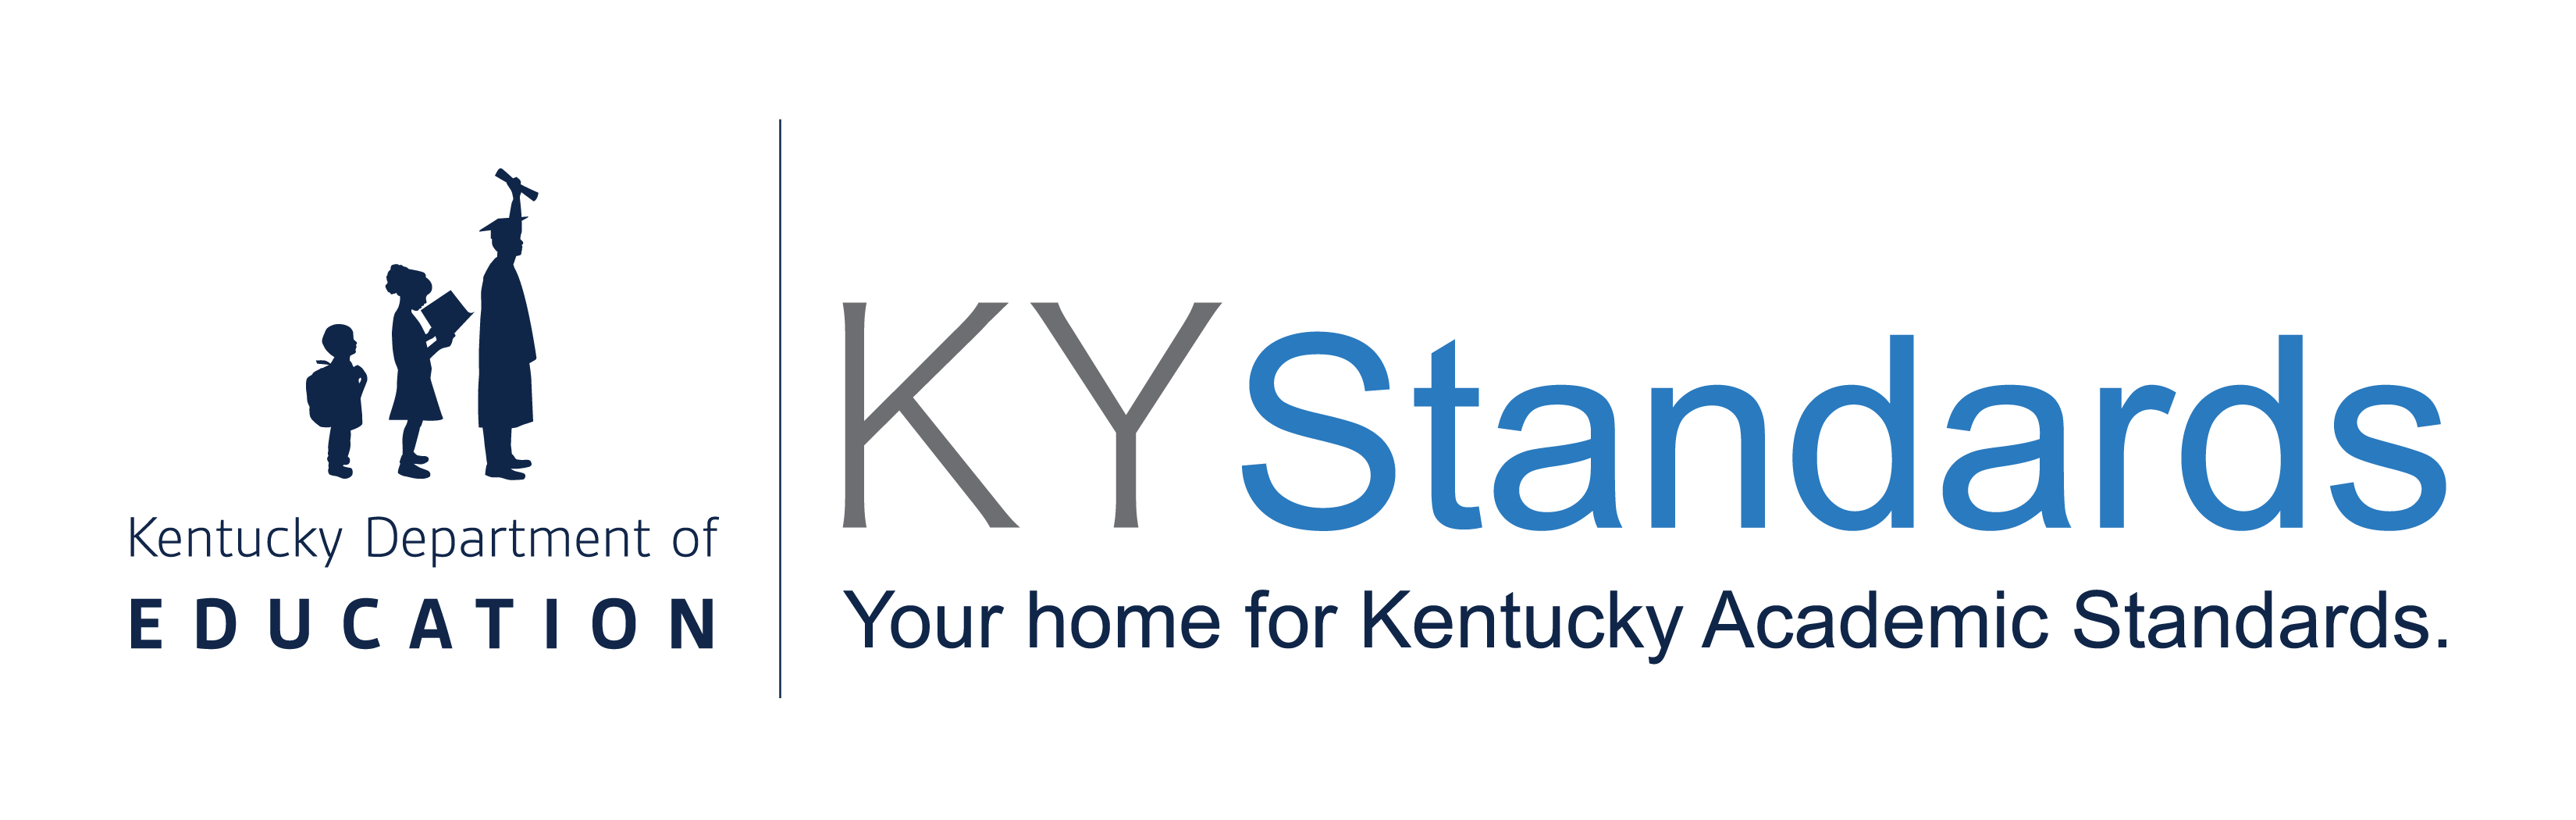 KYstandards.org homepage